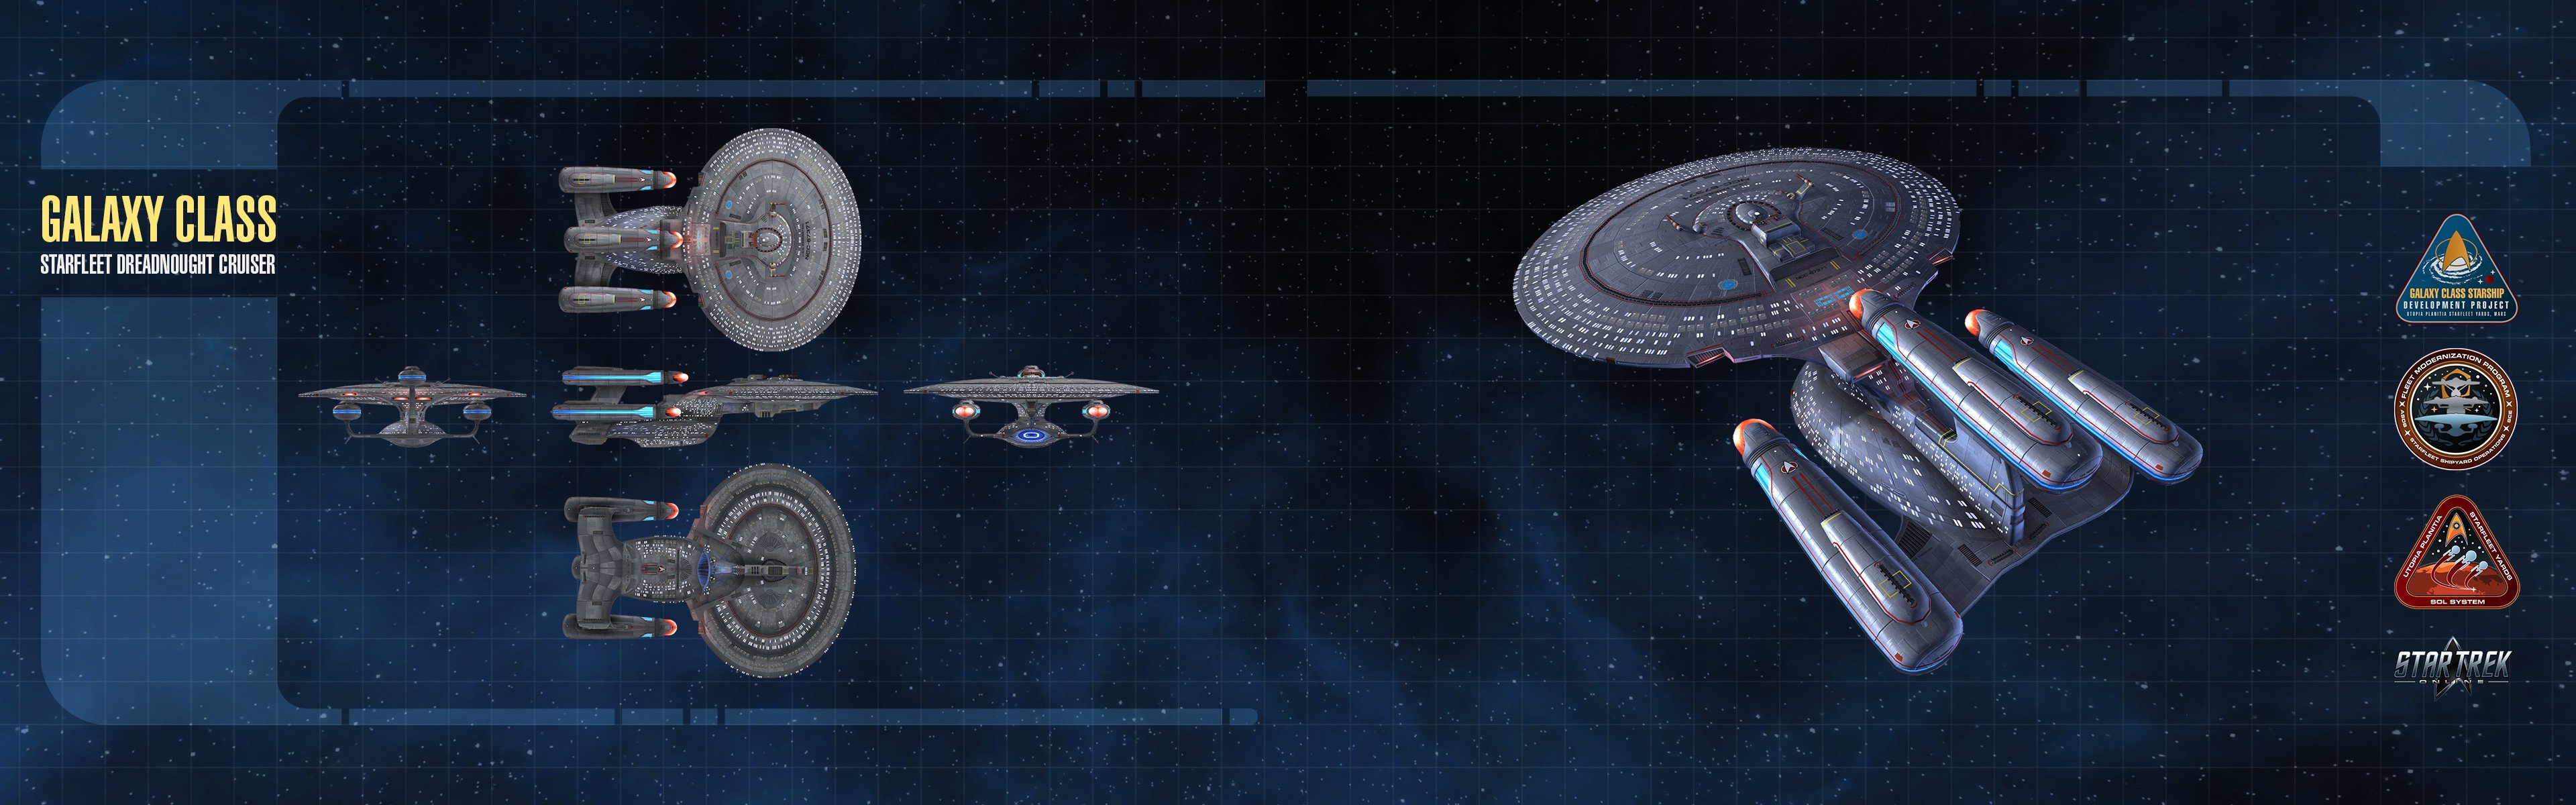 Star Trek, Spaceship, Multiple display Wallpaper